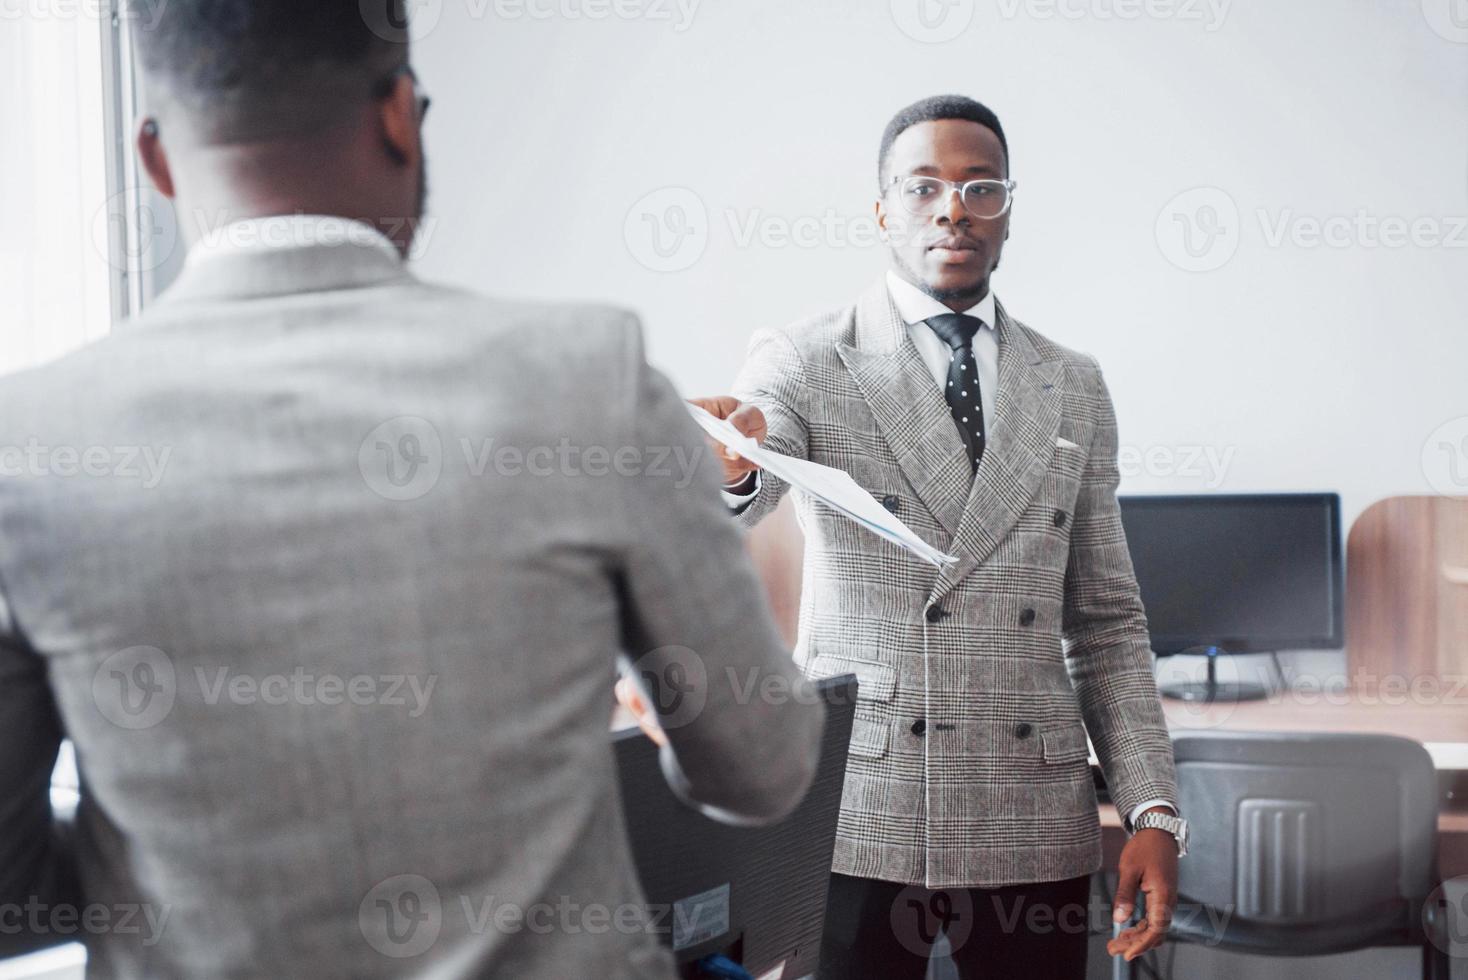 discuter d'un projet. deux hommes d'affaires noirs en tenue de soirée discutant de quelque chose tandis que l'un d'eux pointe un papier photo